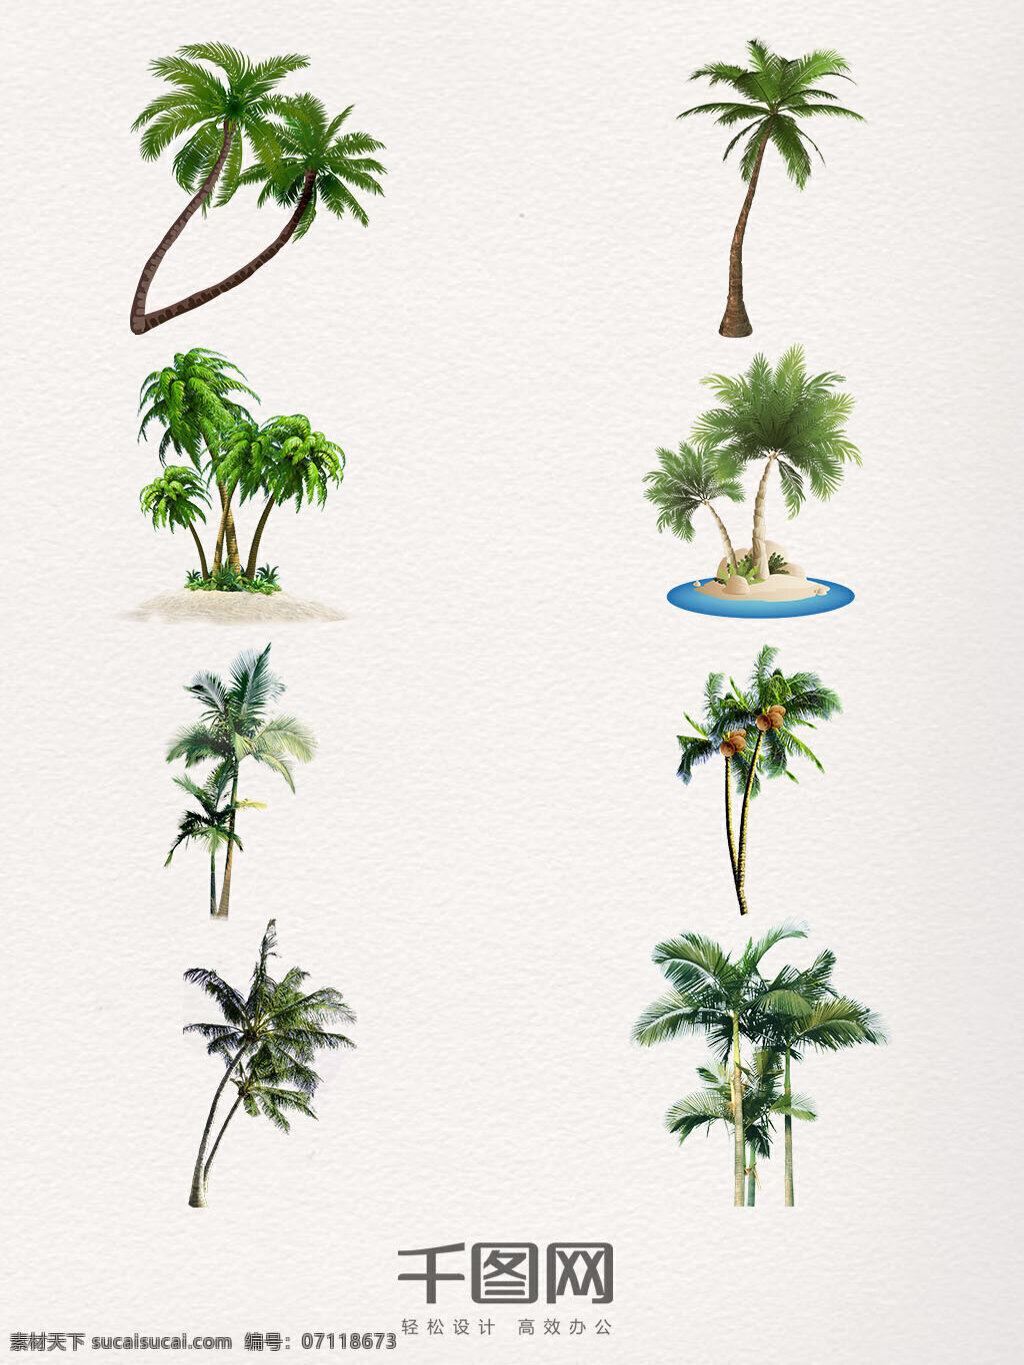 椰子树 图案 装饰 元素 绿色 实物 海岛 沙滩 植物 手绘